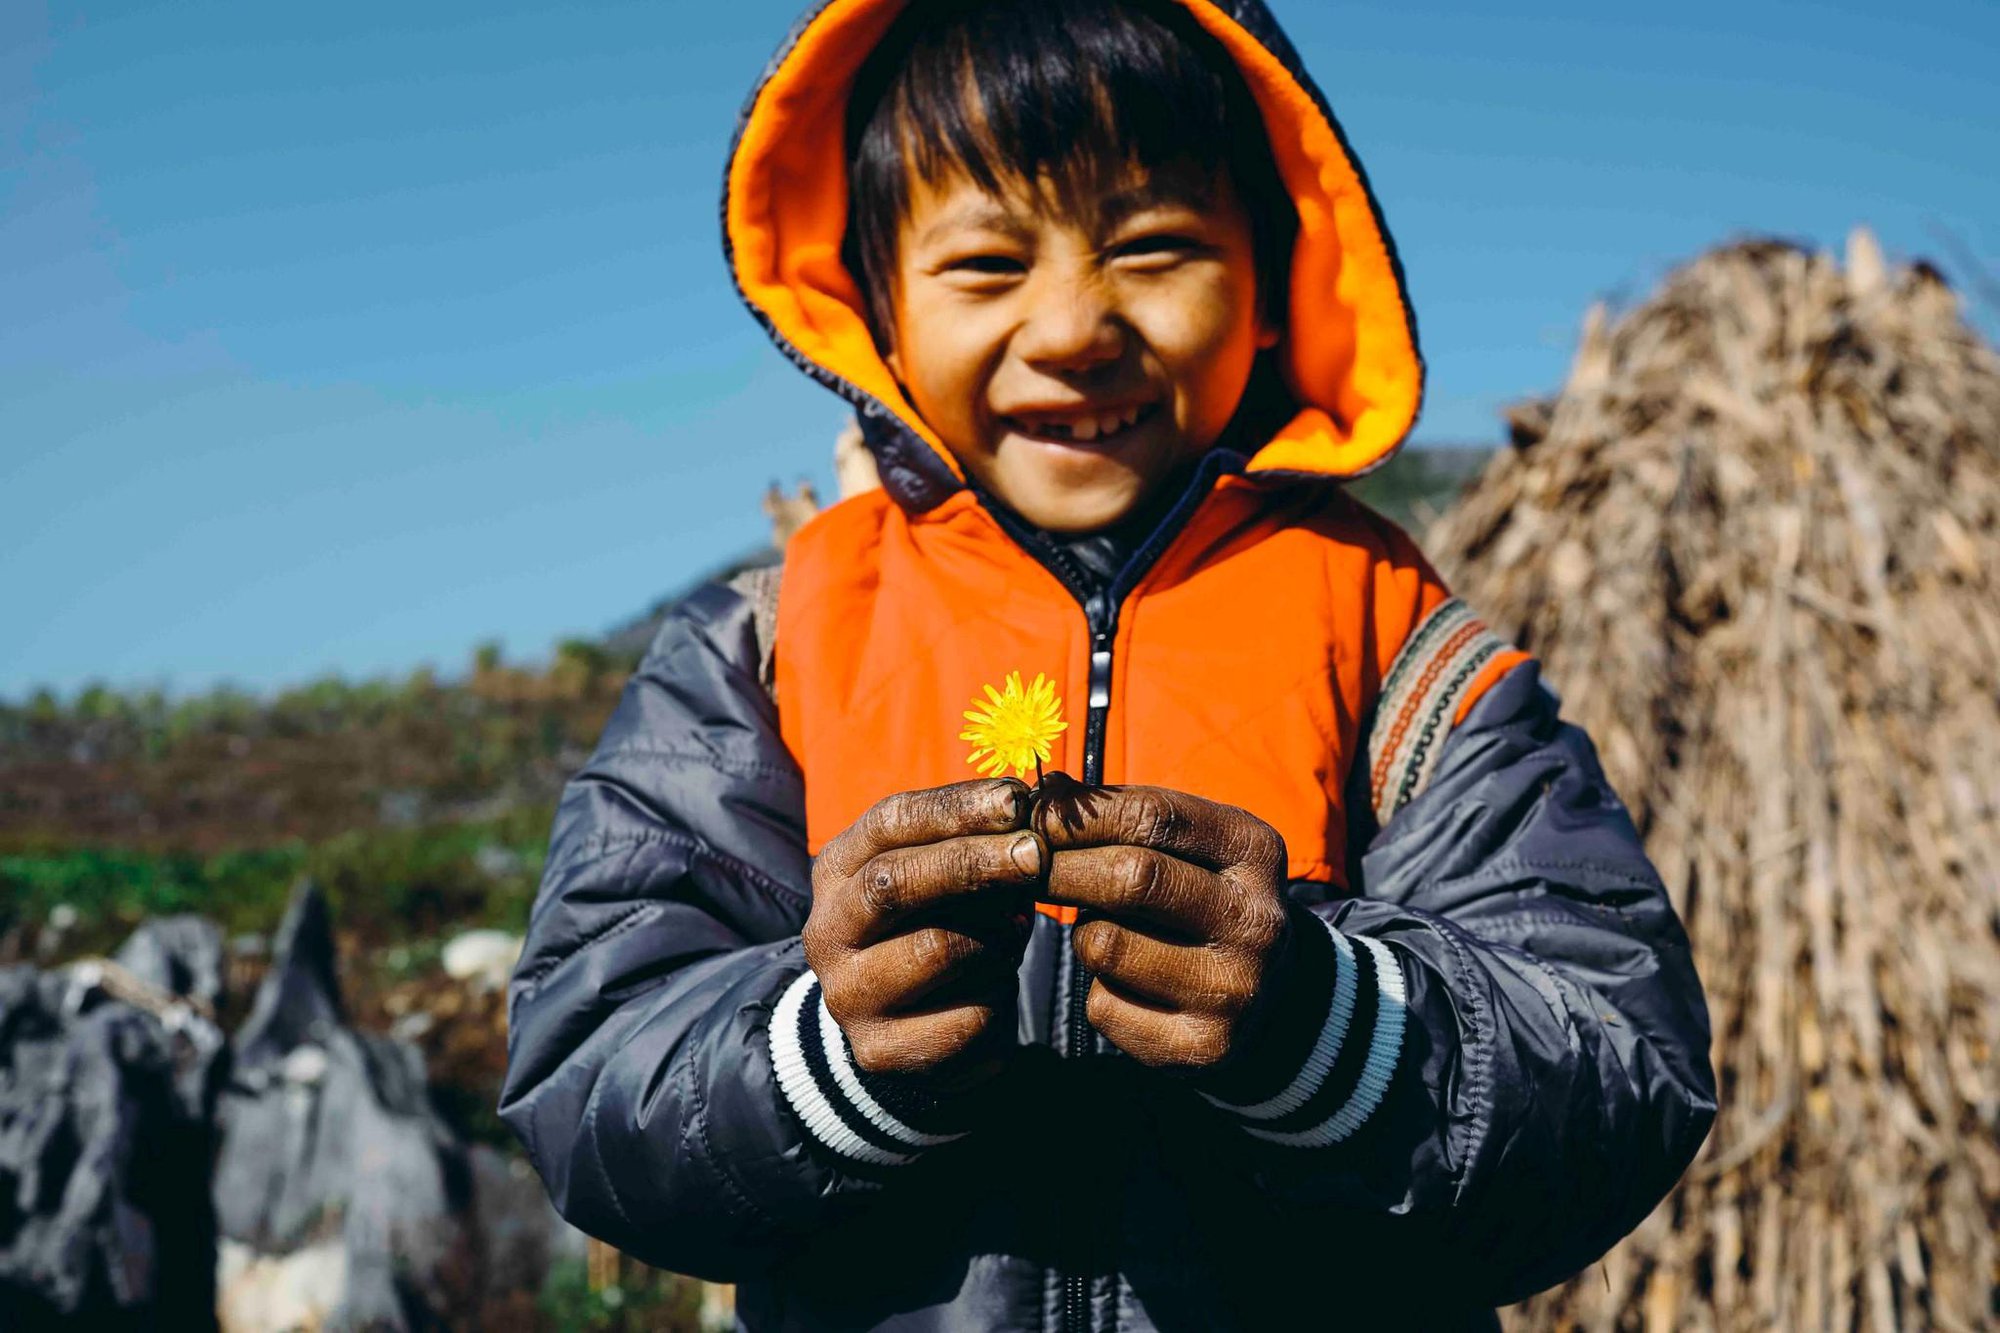 Cỏ Cây Hoa Lá chung tay “nuôi em đến trường” hành trình chắp cánh ước mơ cho trẻ em nghèo nơi địa đầu Tổ Quốc - Ảnh 10.